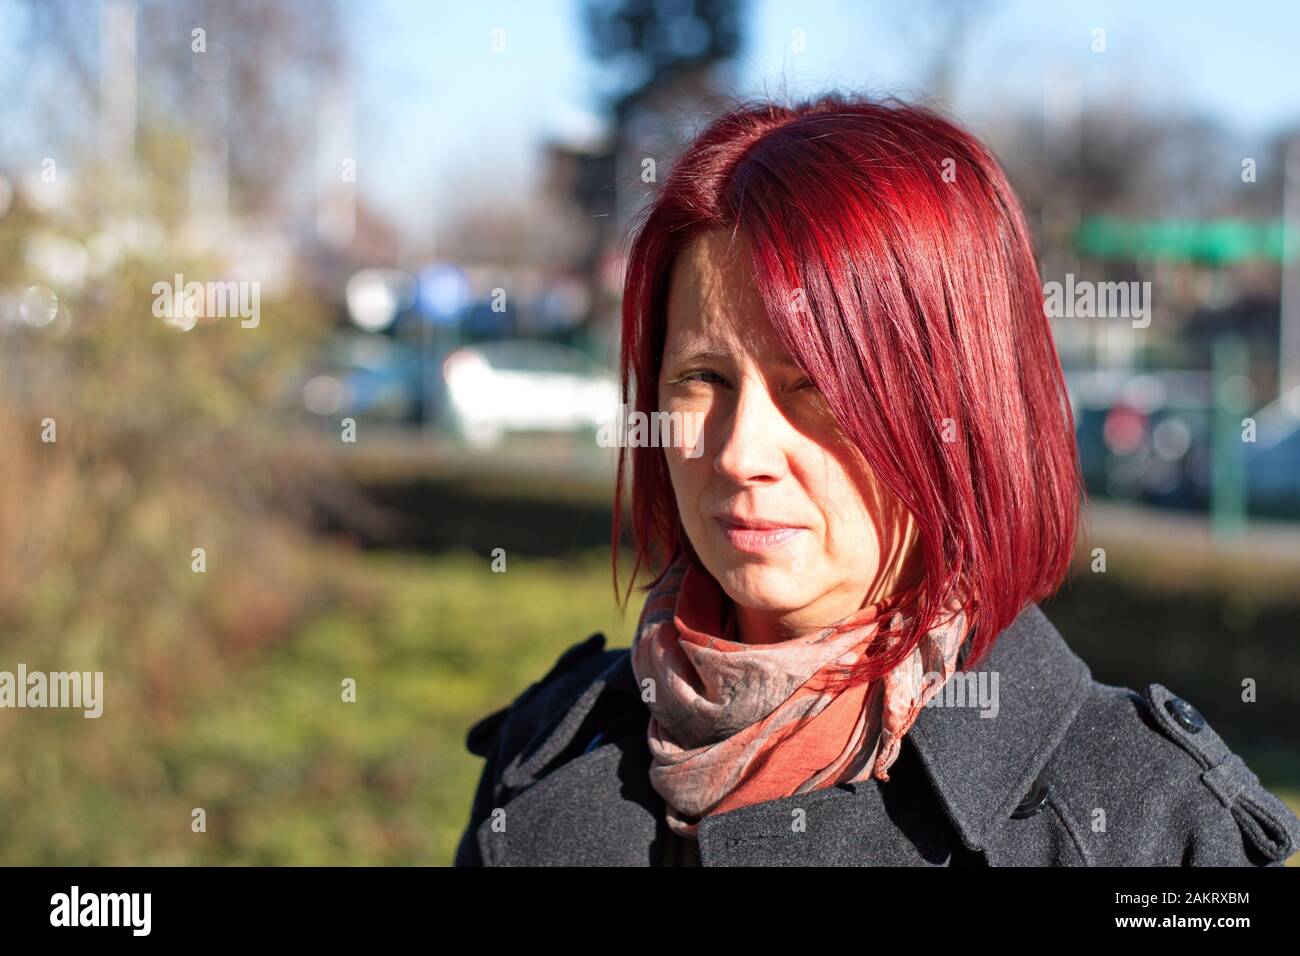 Portrait de la jeune femme aux cheveux rouges Banque D'Images